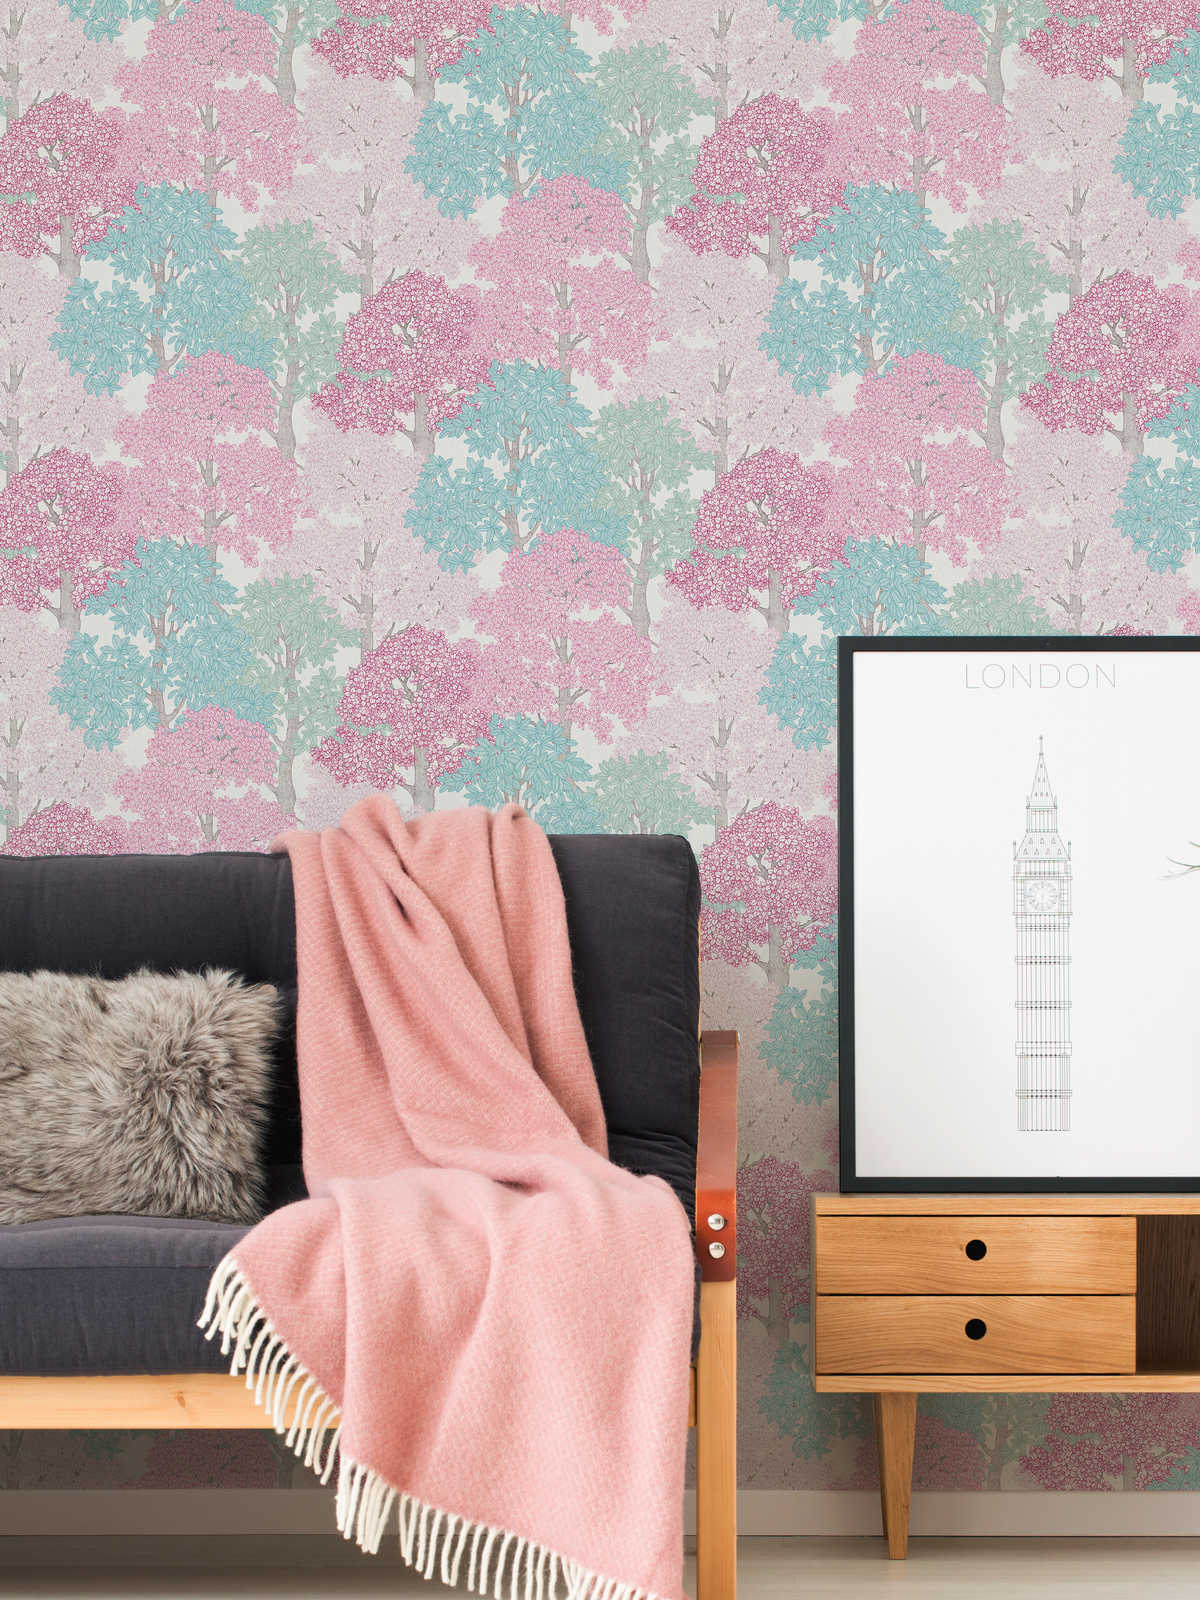             Behang bosontwerp in tekenstijl met boomtoppen - roze, blauw, wit
        